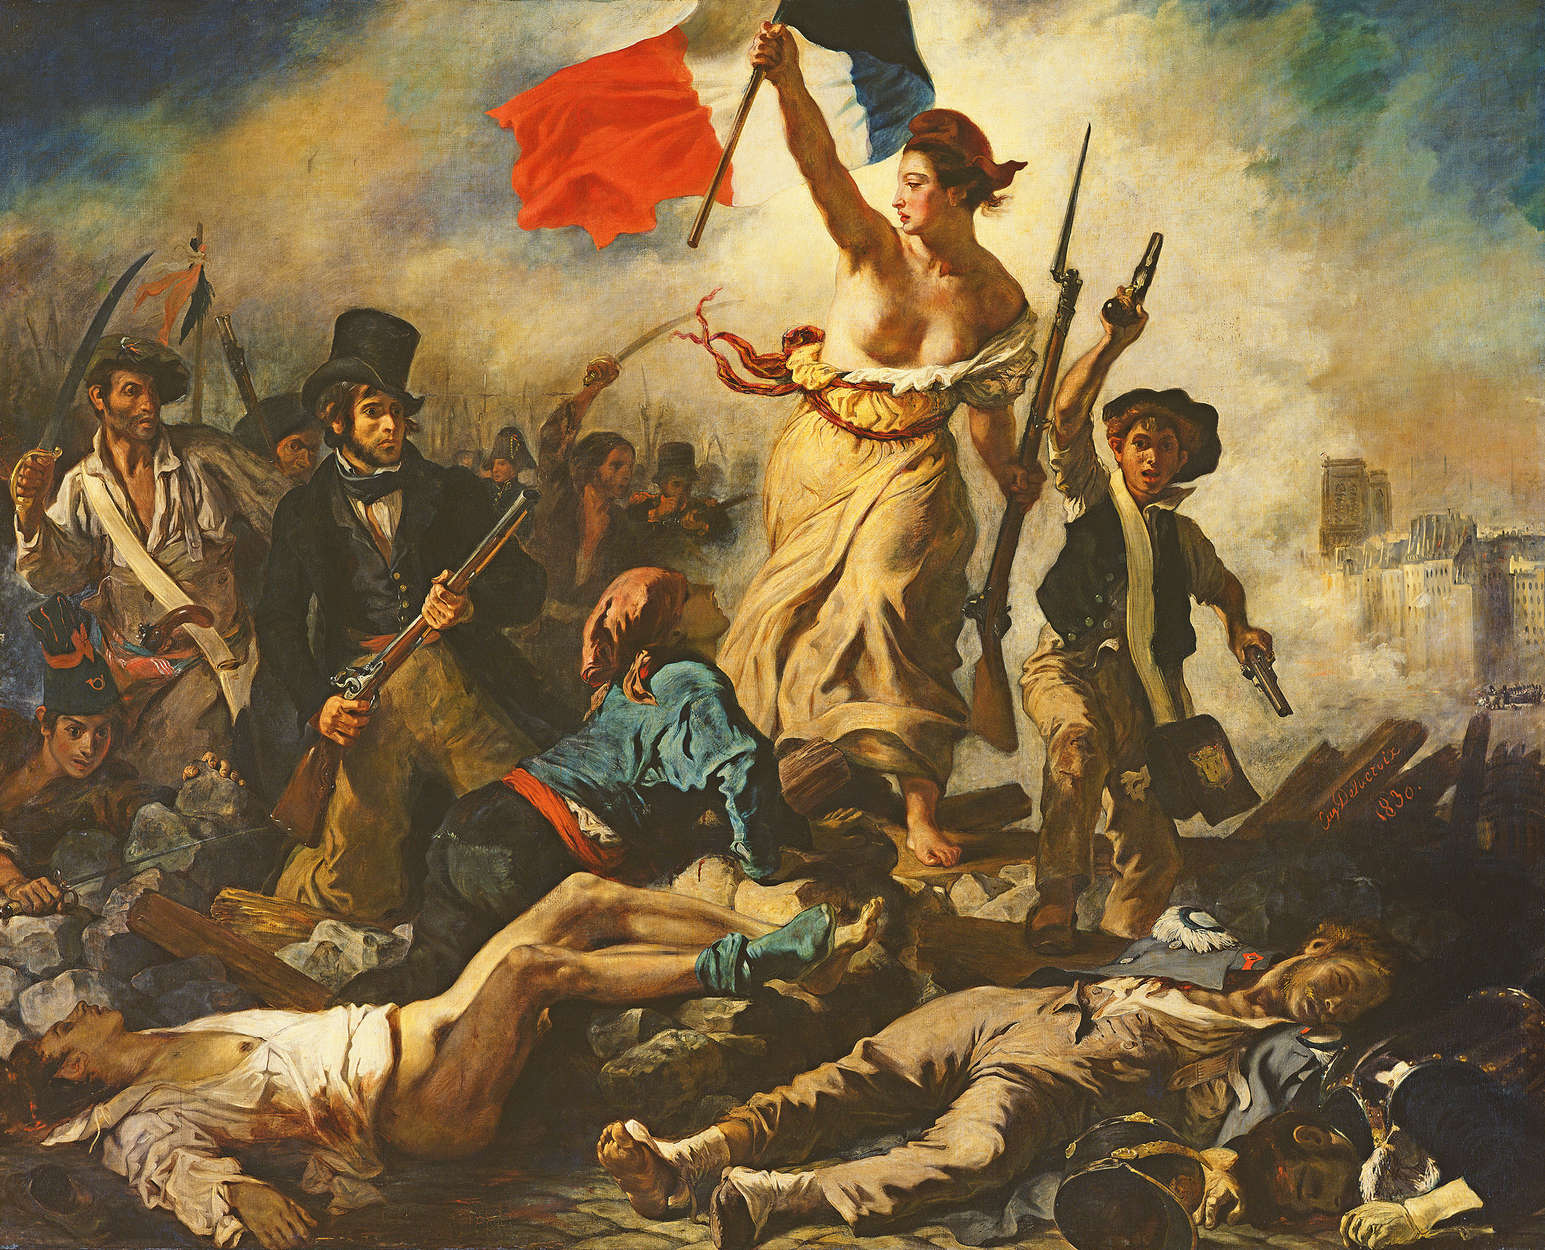             Fotomurali "La libertà che guida il popolo" di Eugène Delacroix
        